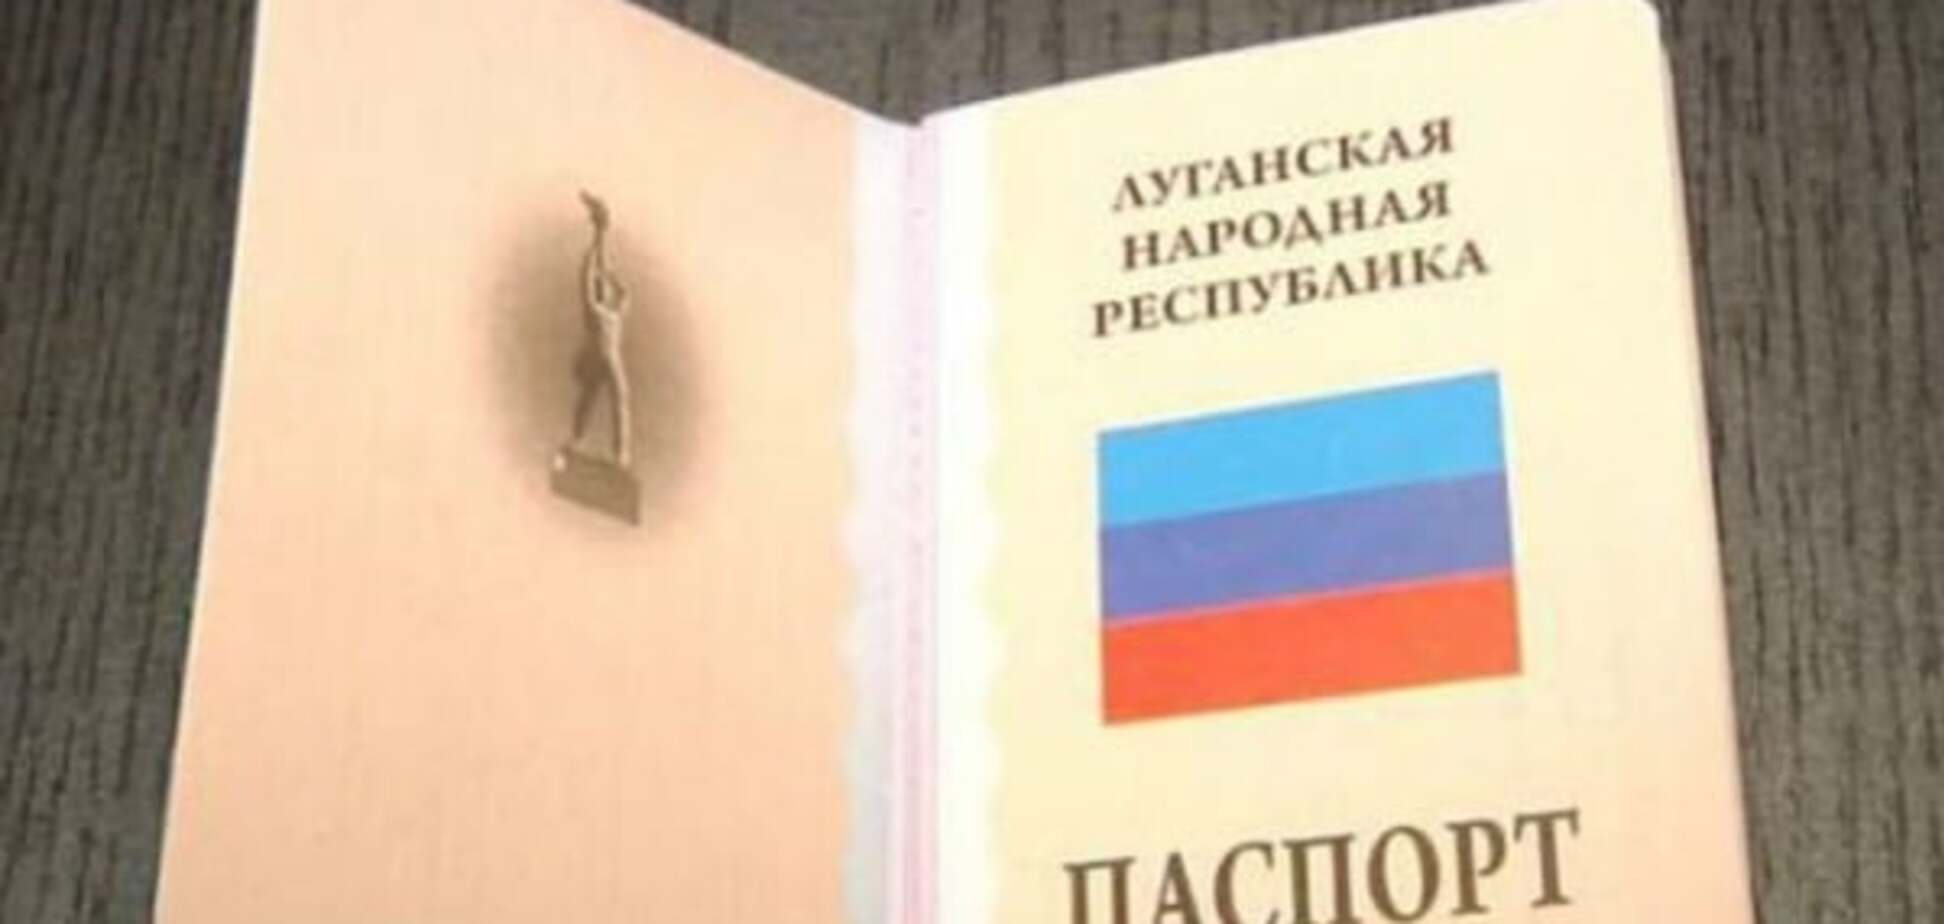 У 'ЛНР' відмовилися видавати 'паспорт' російському наймиту